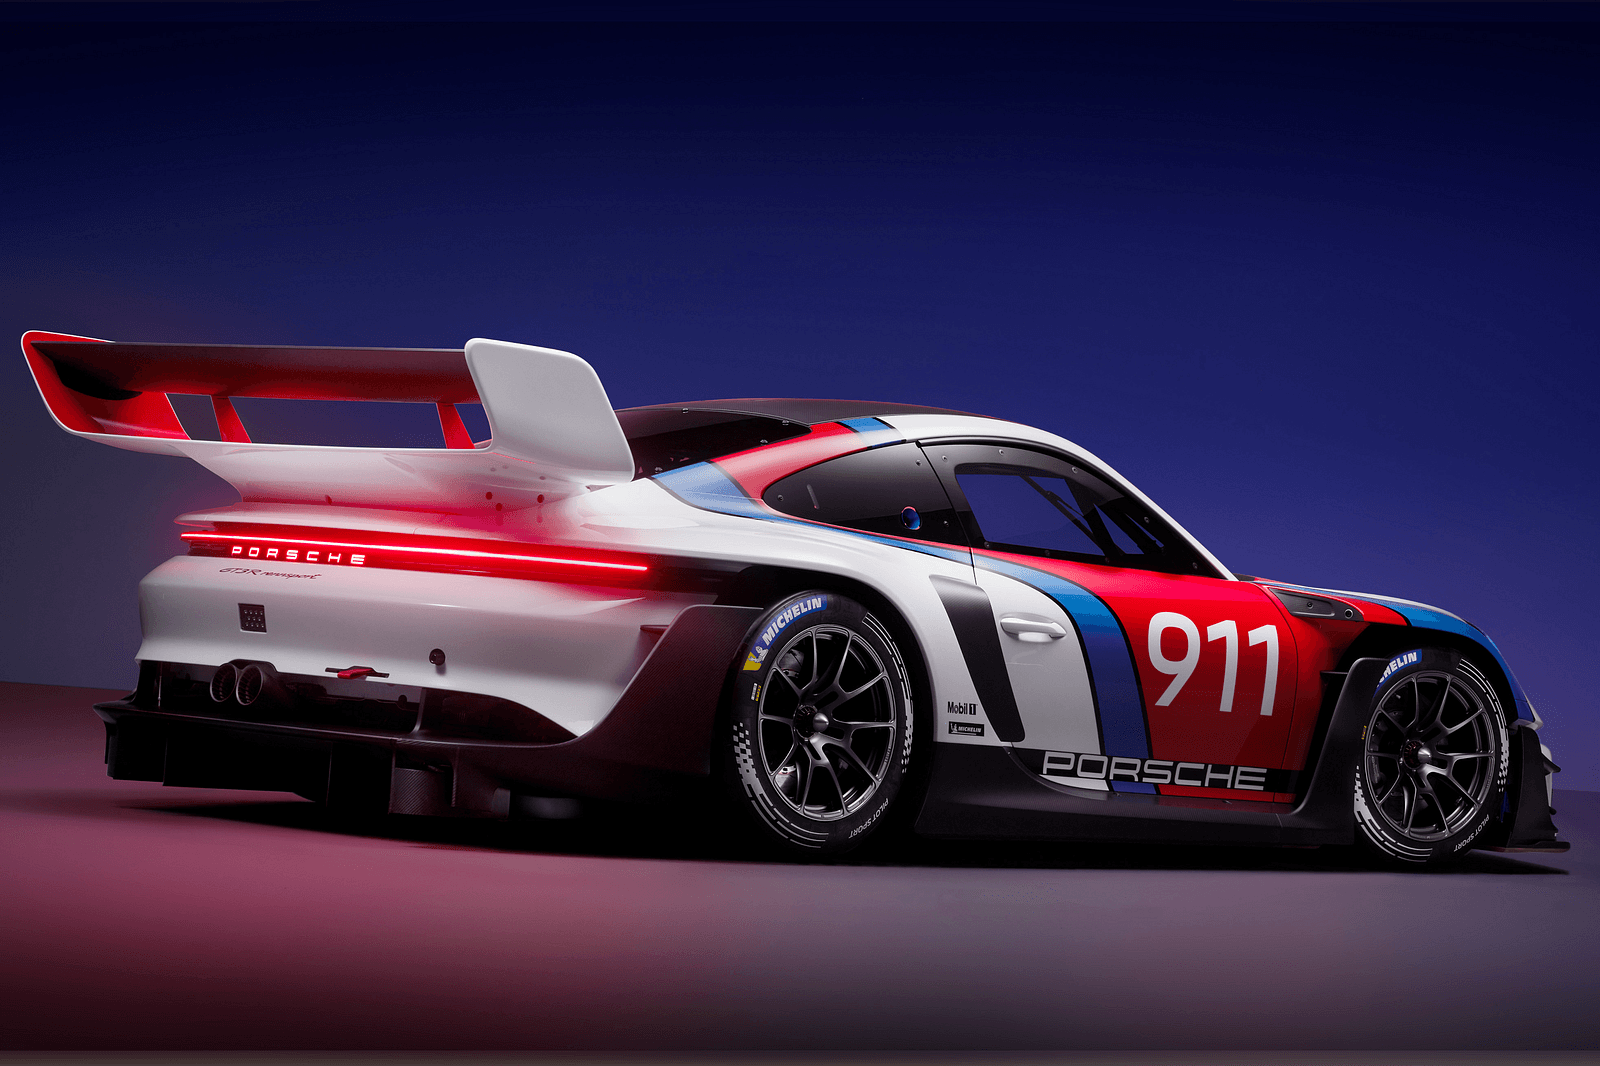 Porsche 911 GT3 R Rennsport: la nuova supercar da pista con oltre 600 CV di potenza